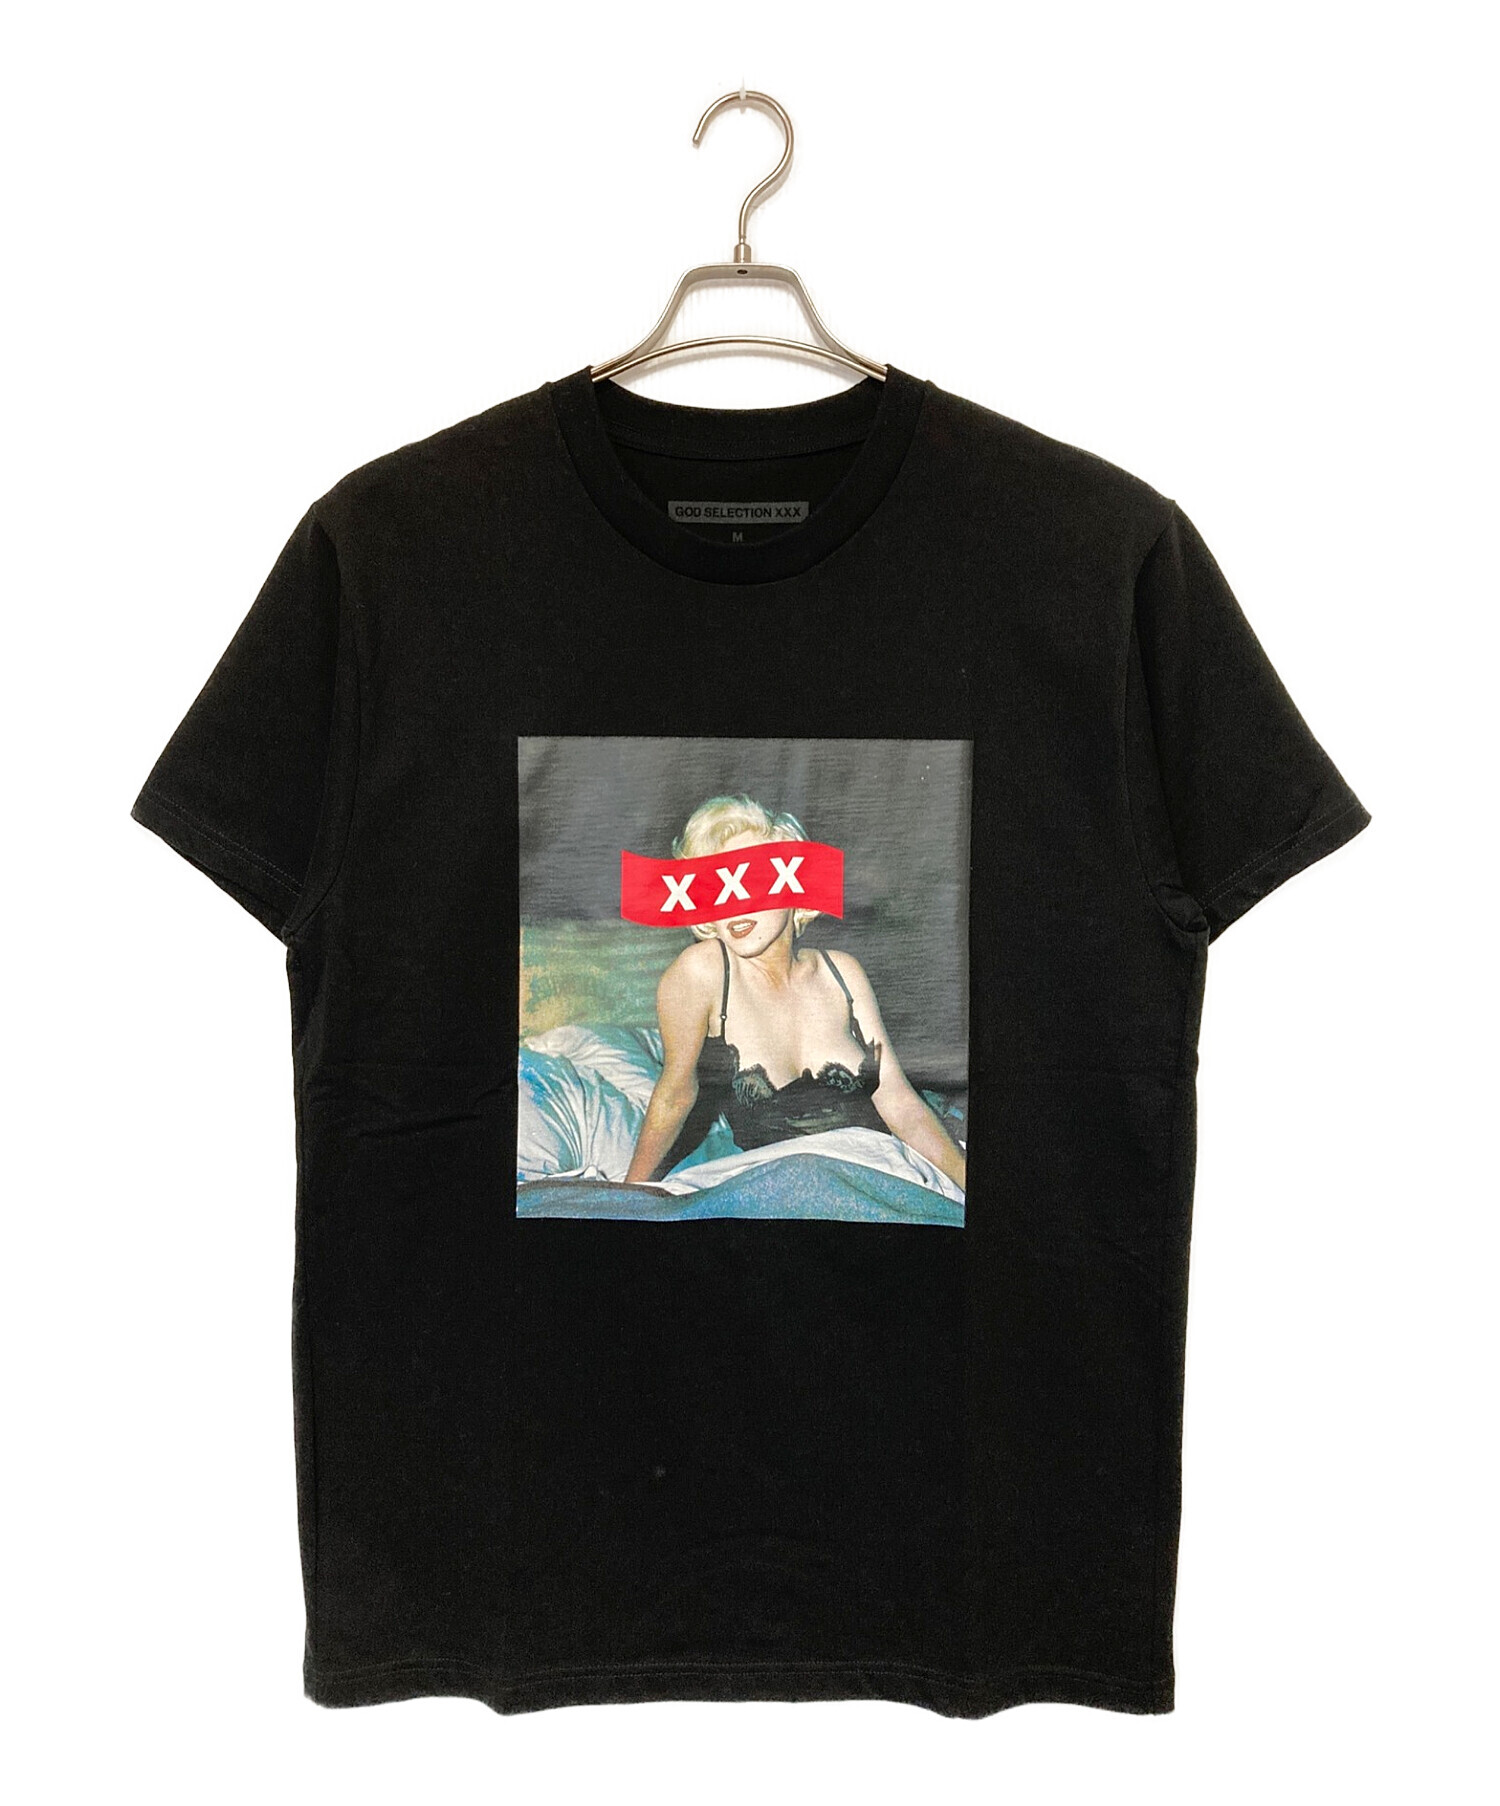 GOD SELECTION XXX マリリンモンロー Tシャツ M ブラック - Tシャツ